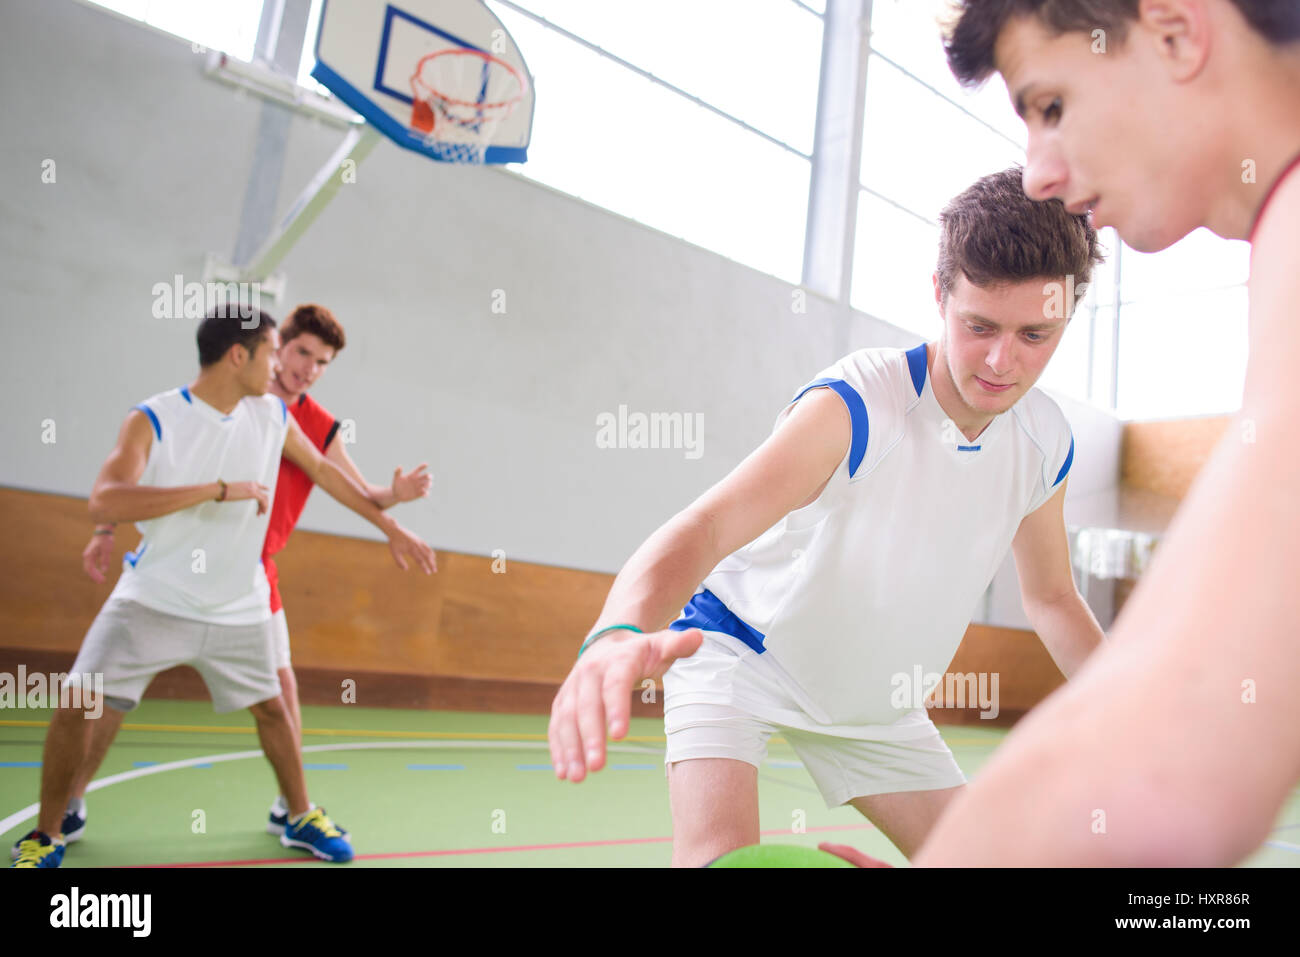 basketball game Stock Photo